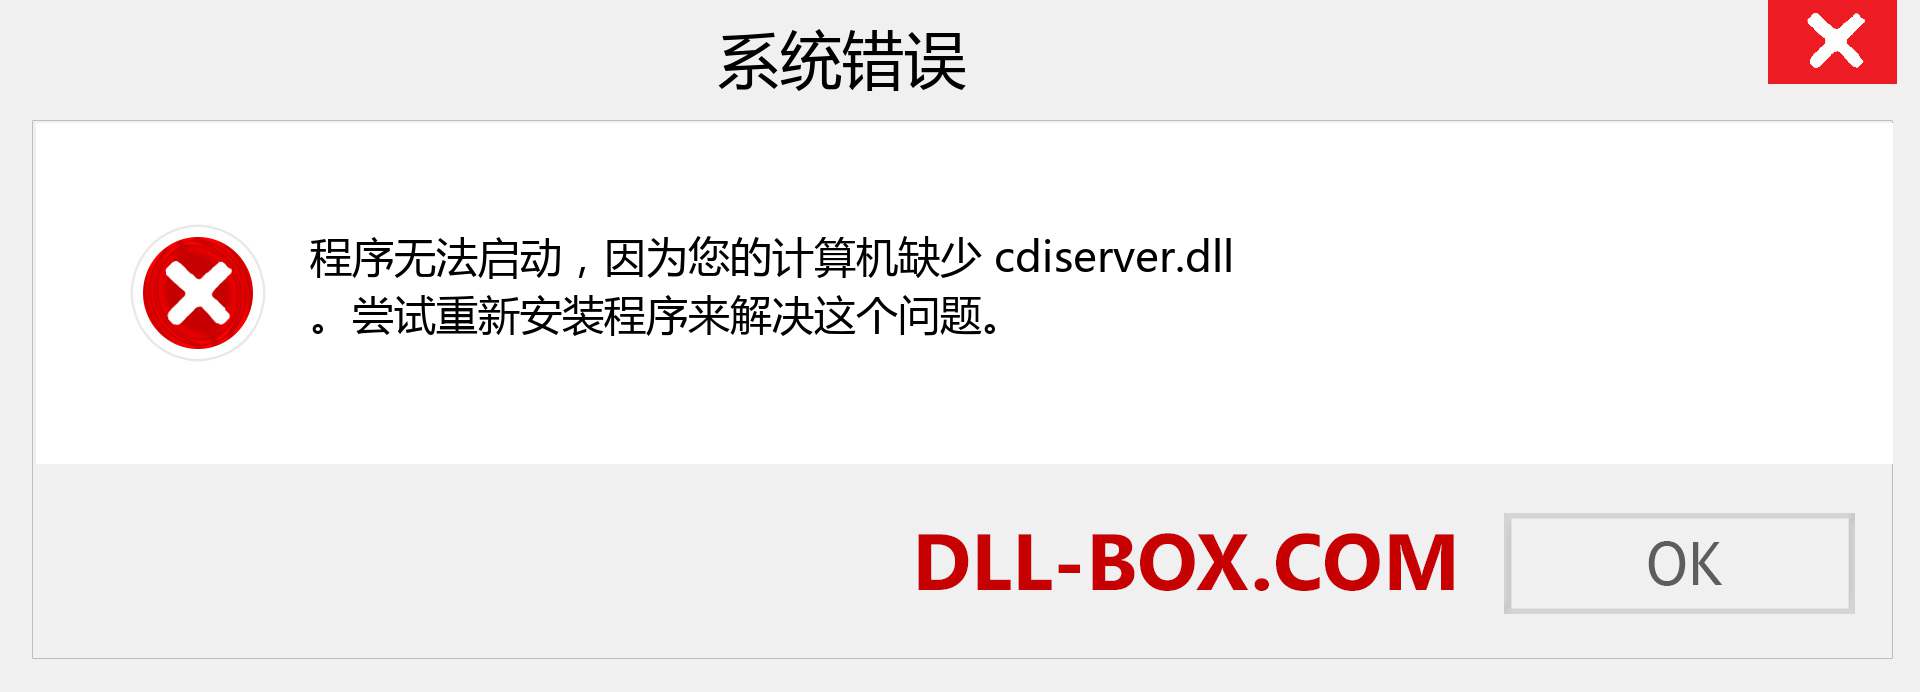 cdiserver.dll 文件丢失？。 适用于 Windows 7、8、10 的下载 - 修复 Windows、照片、图像上的 cdiserver dll 丢失错误